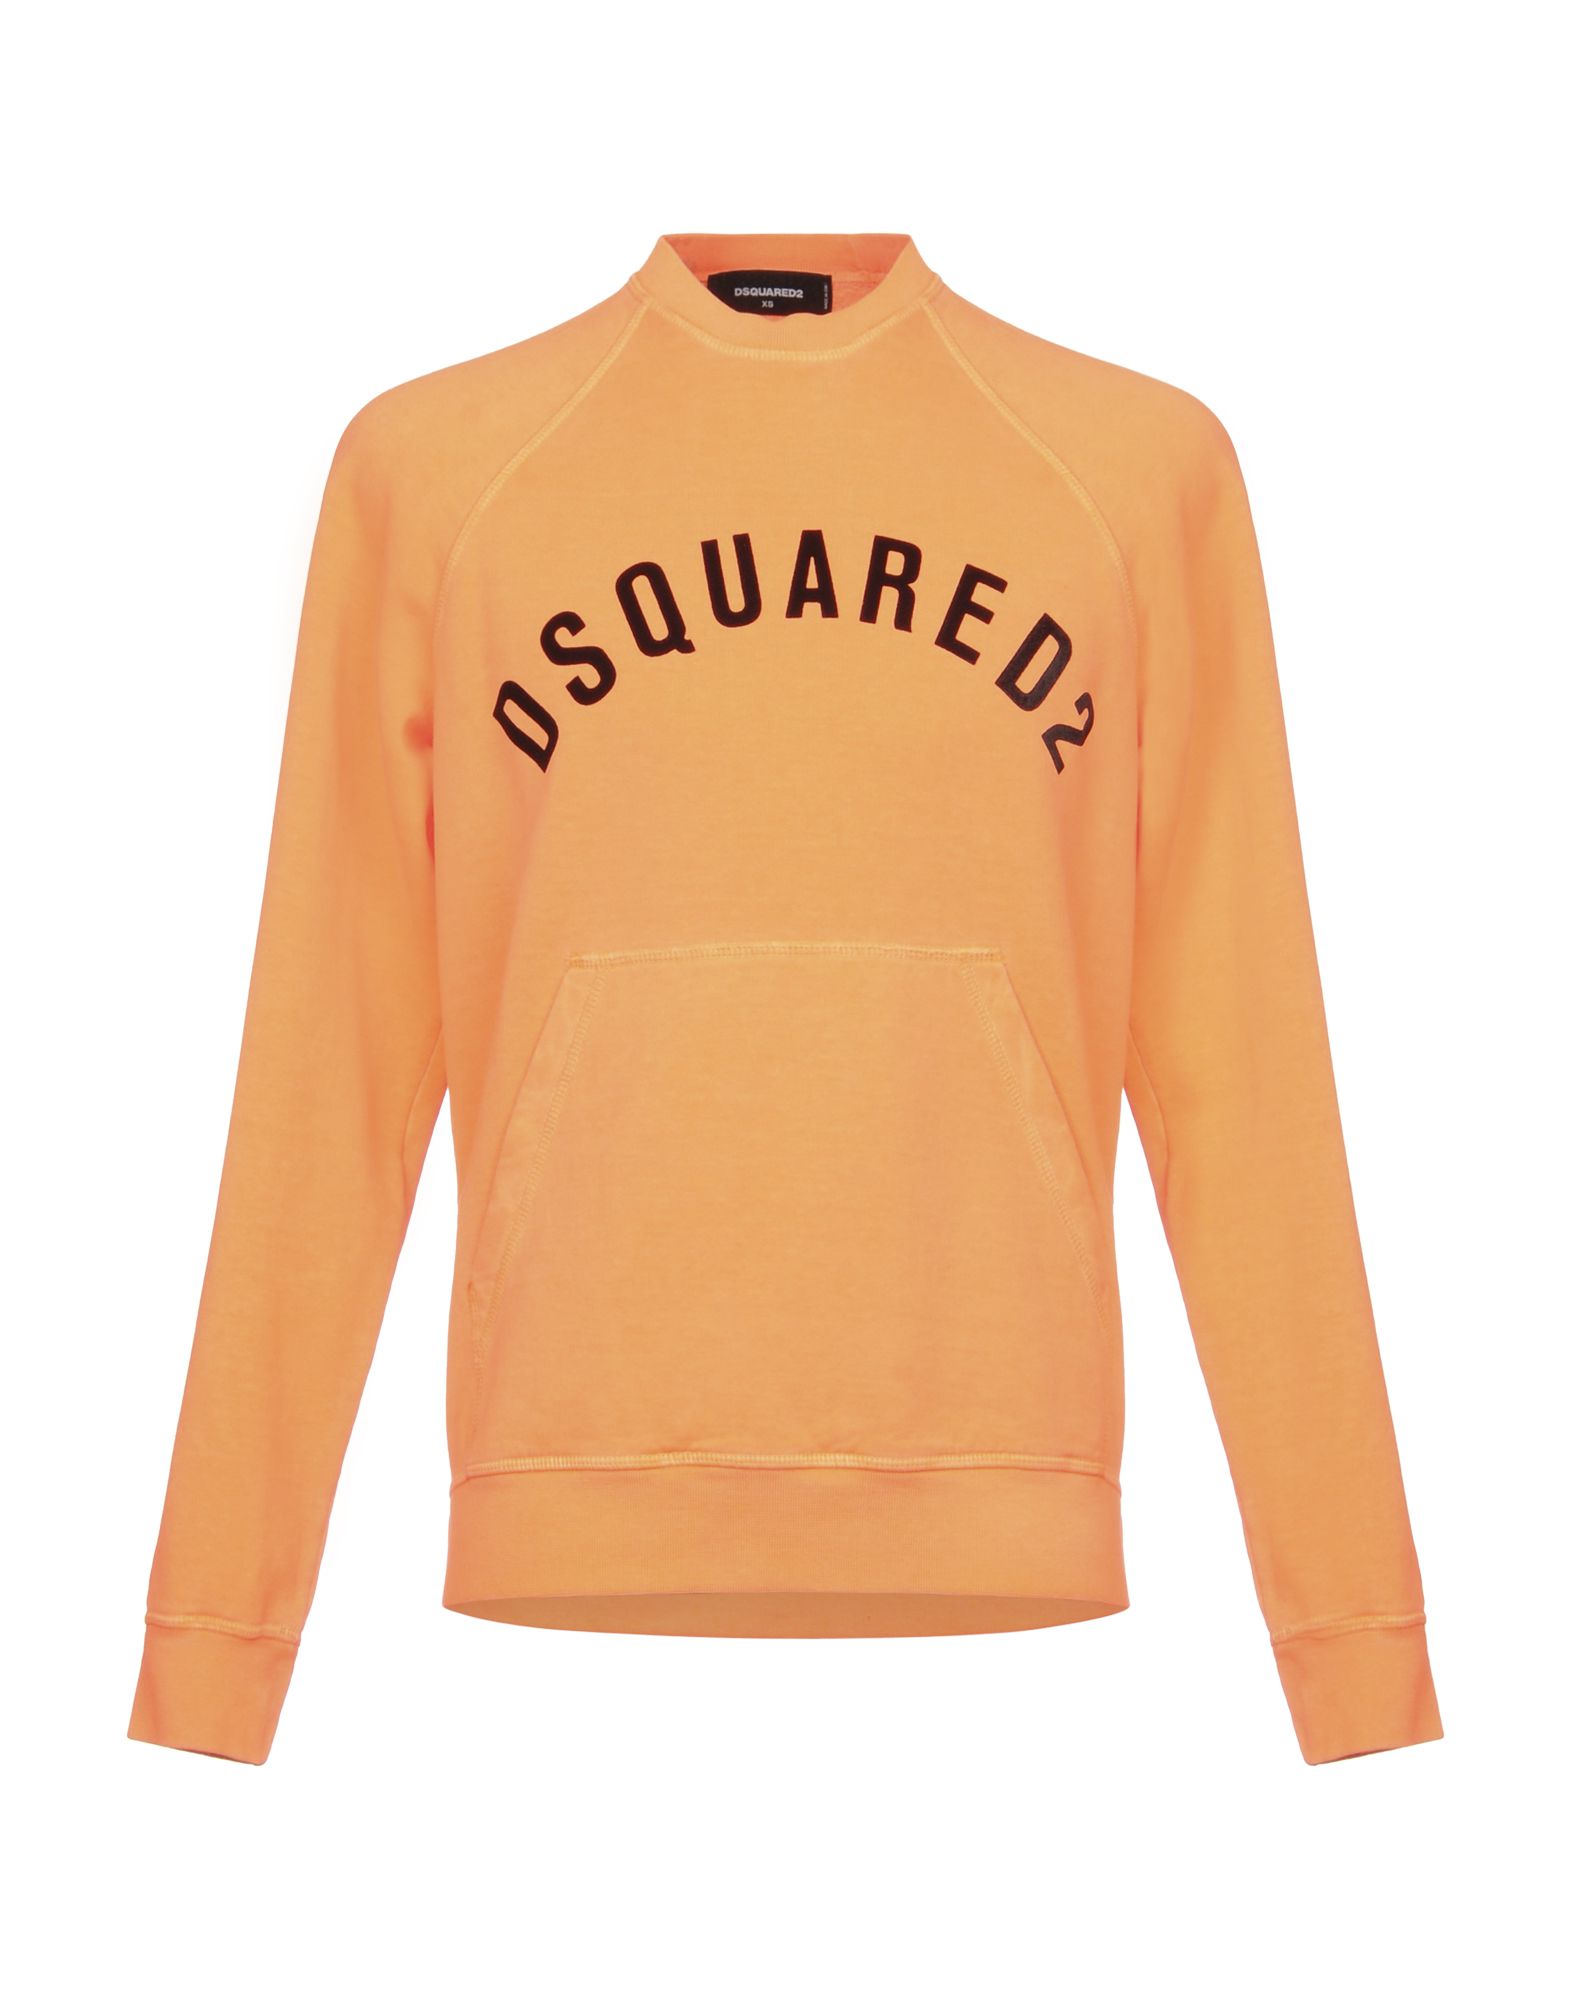 dsquared sweatshirt orange - 65% remise 